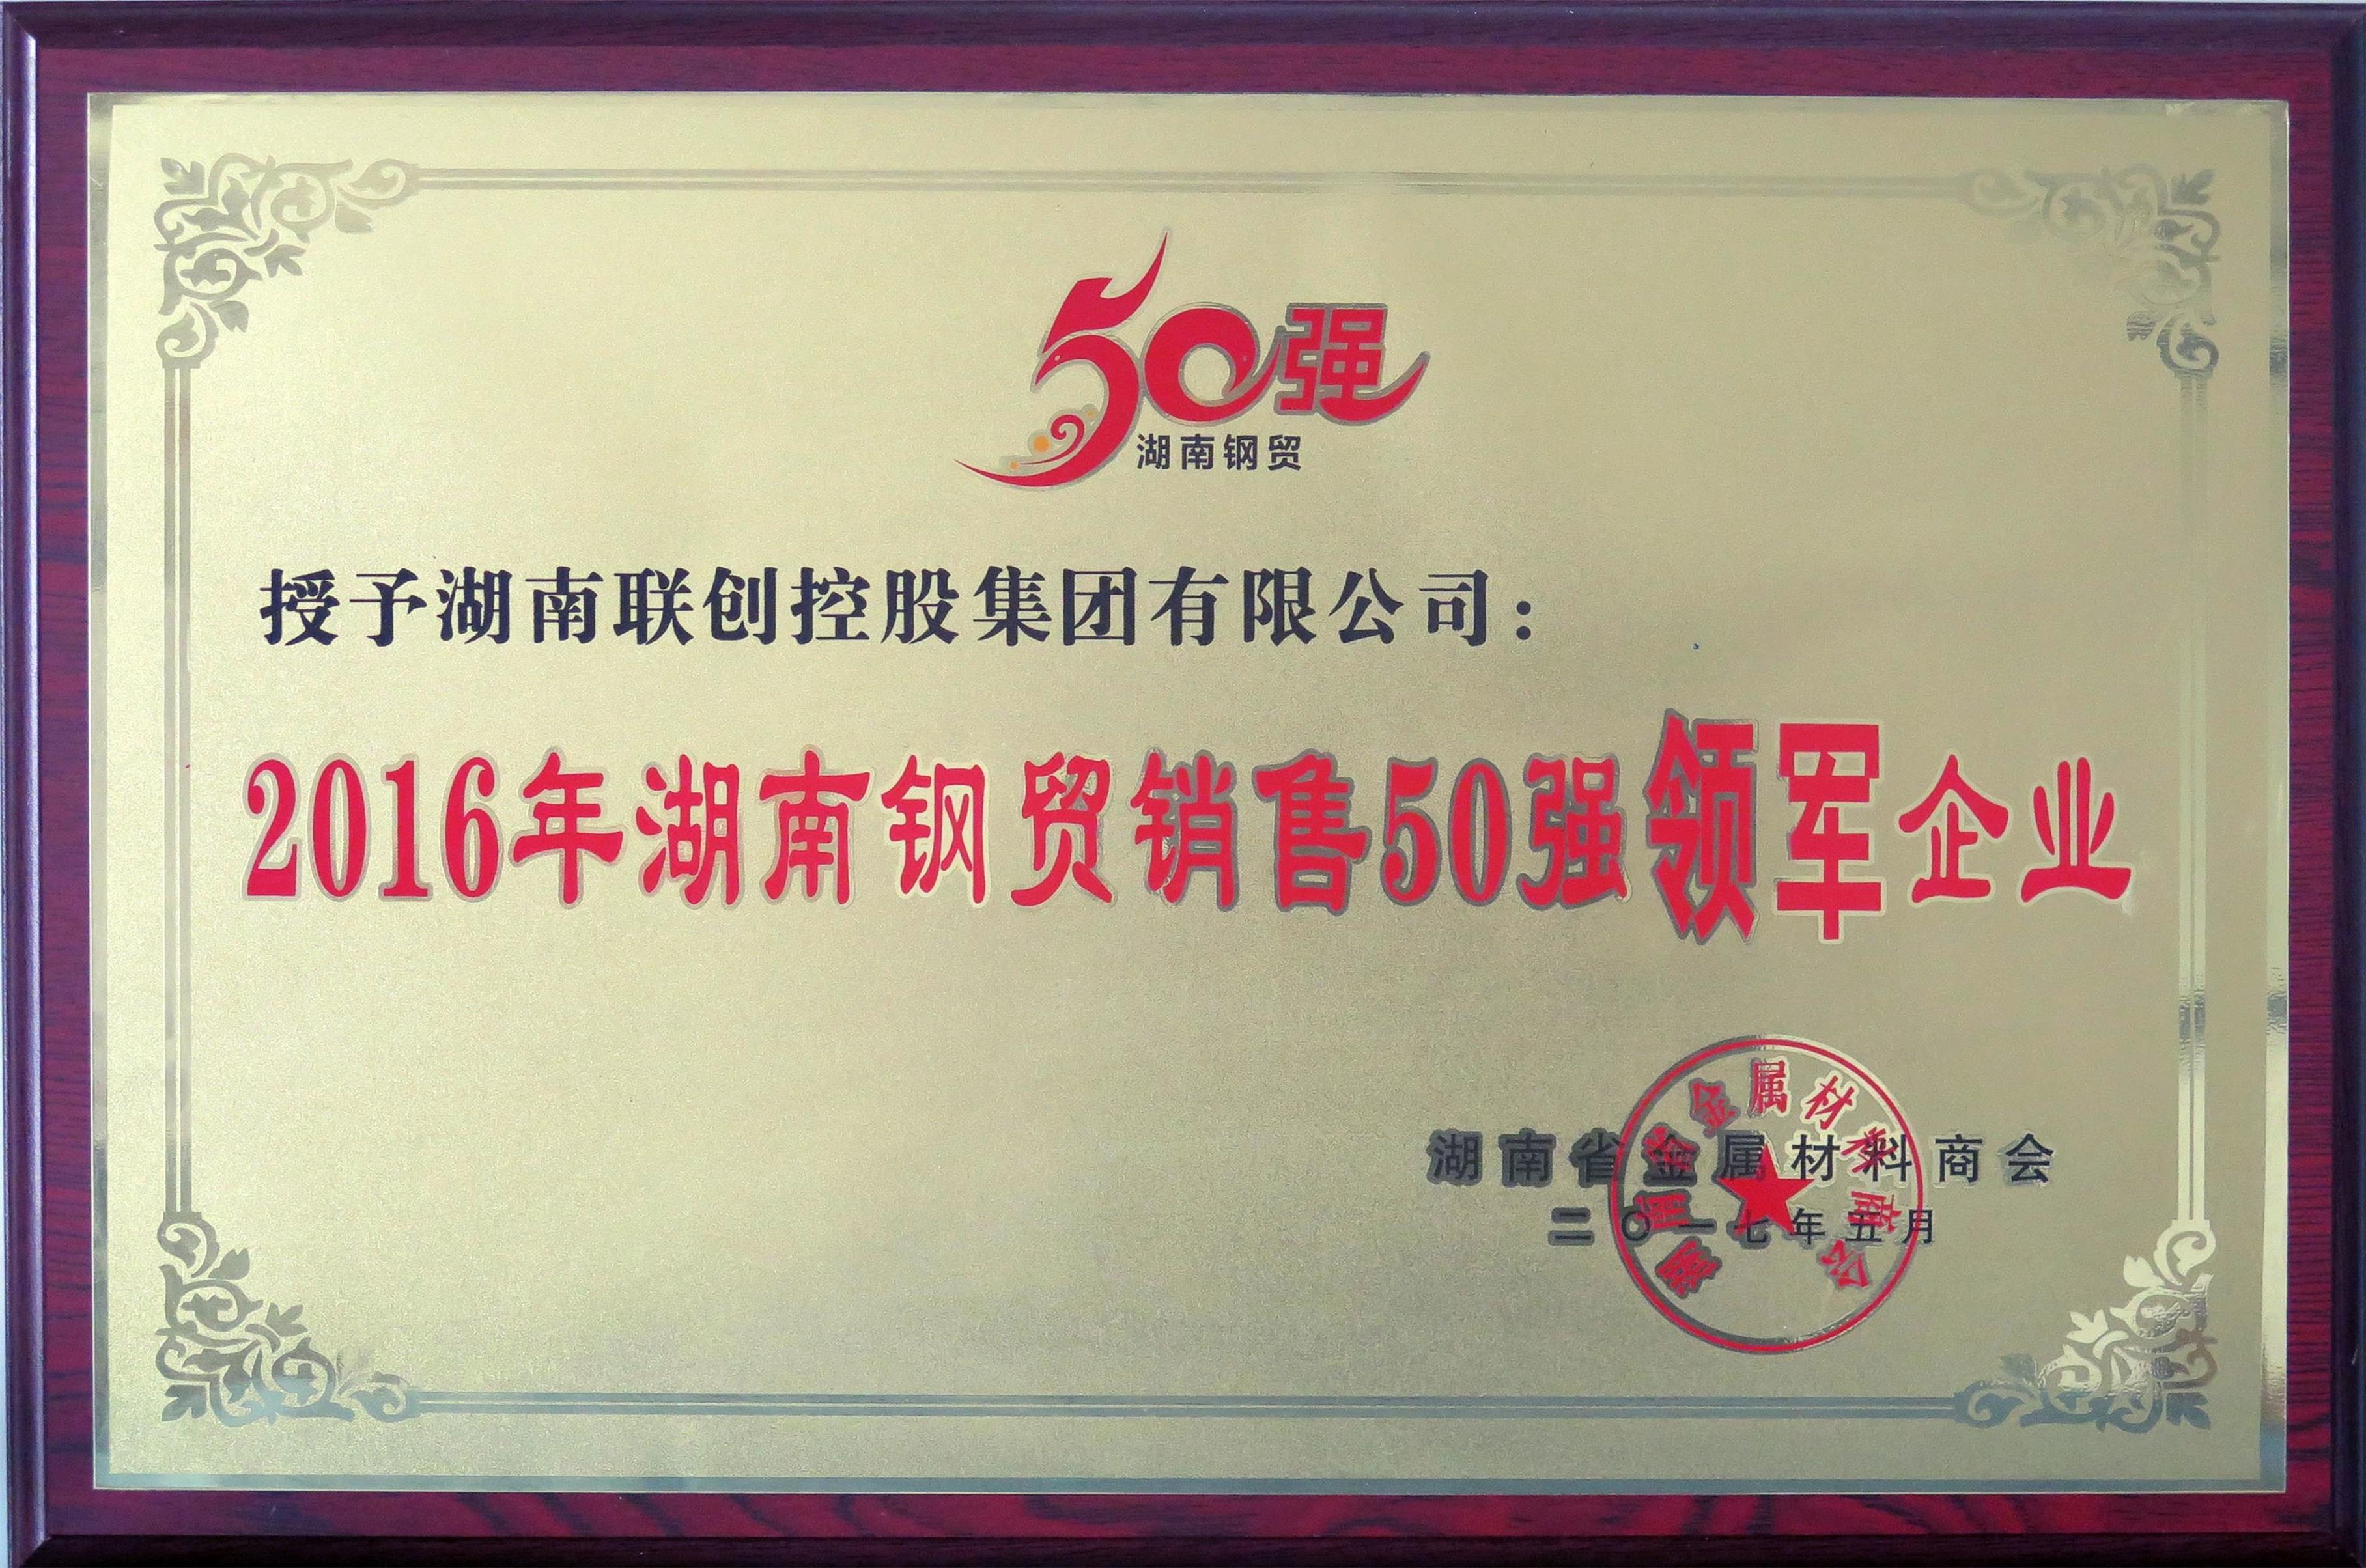 2016年湖南钢材销售五十强领军企业